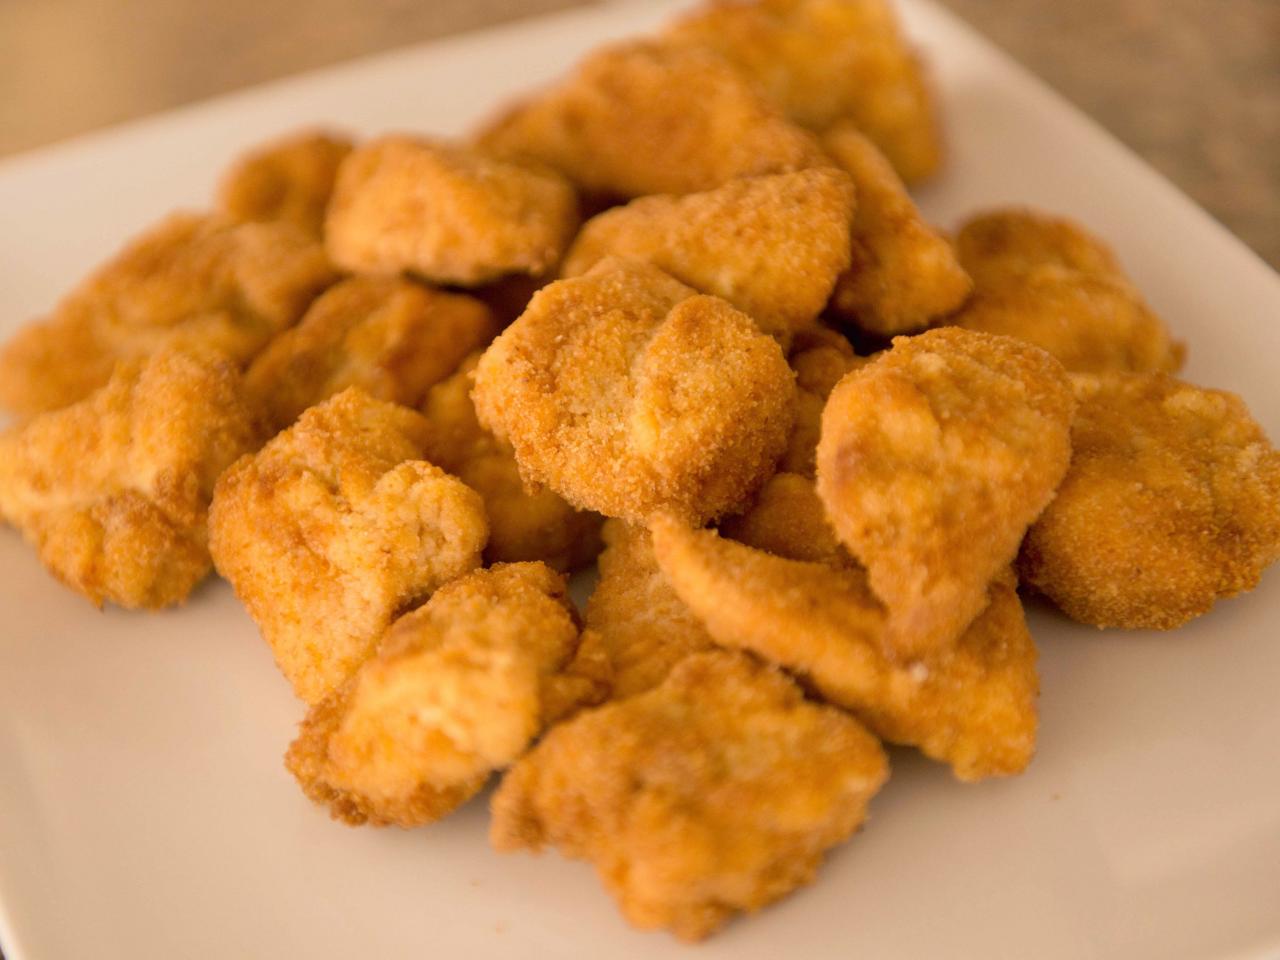 chicken mcnuggets